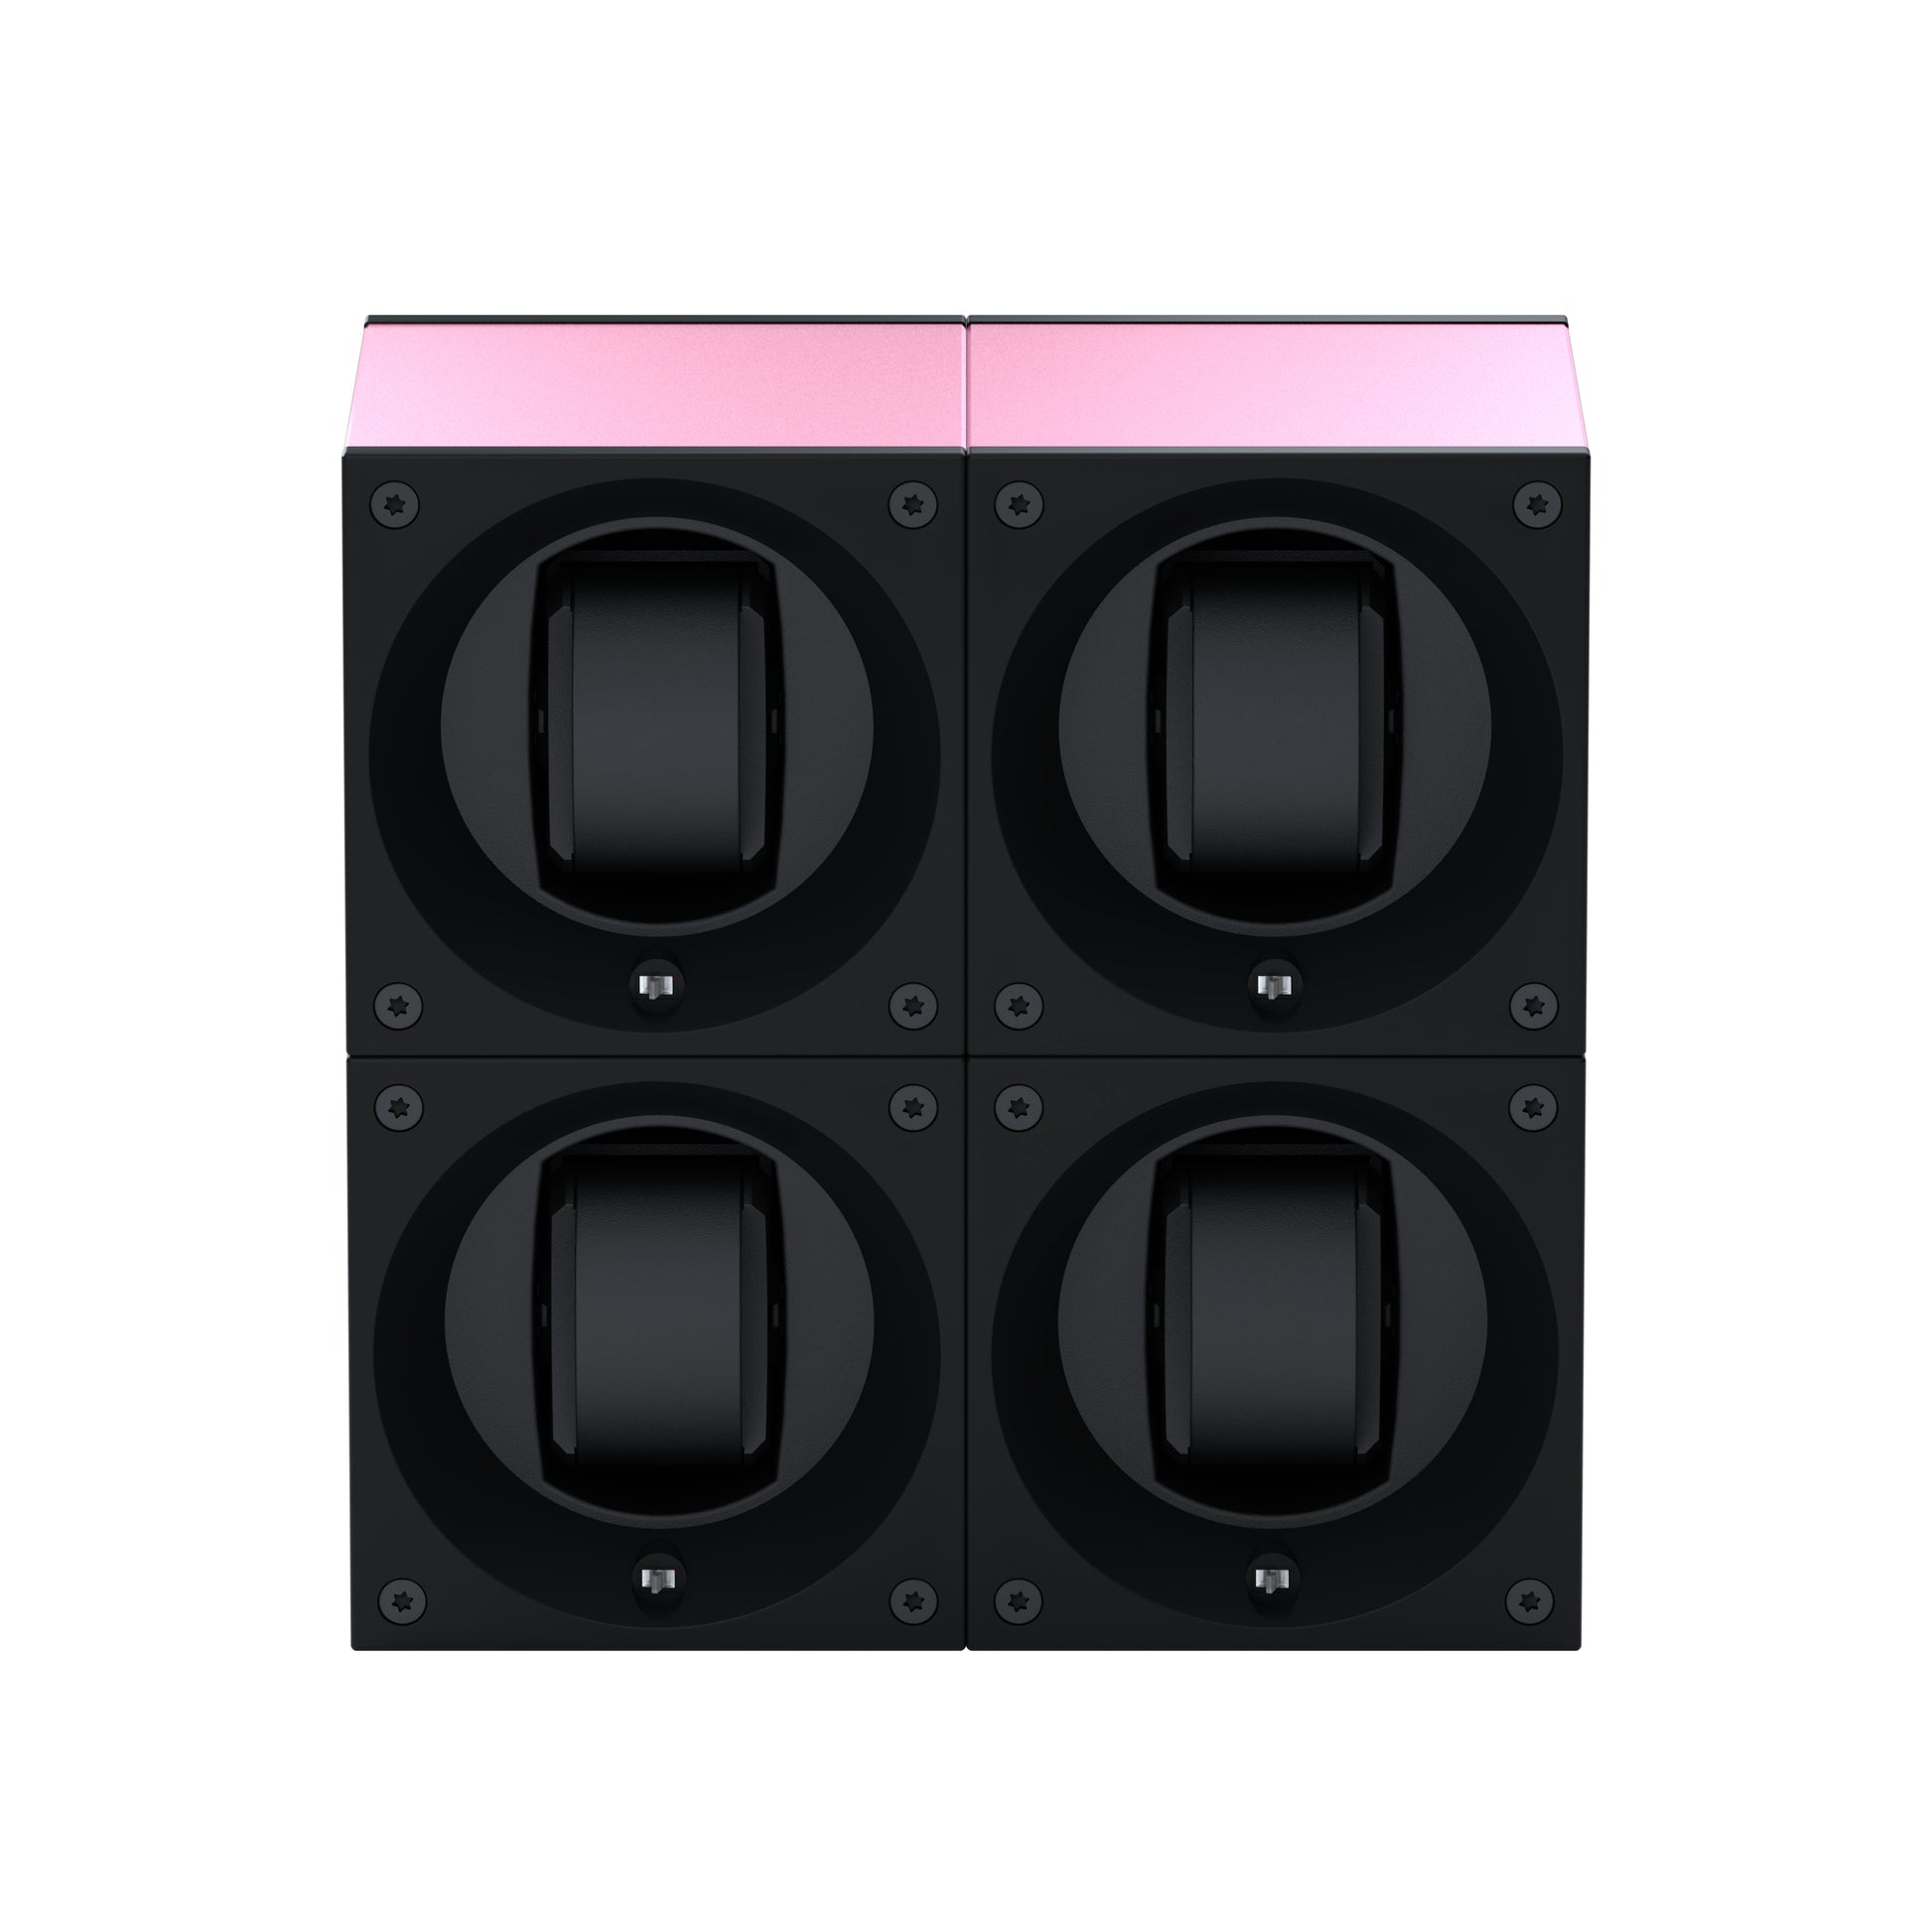 Masterbox 4 montres Aluminium Rose : écrin rotatif pour montre automatique